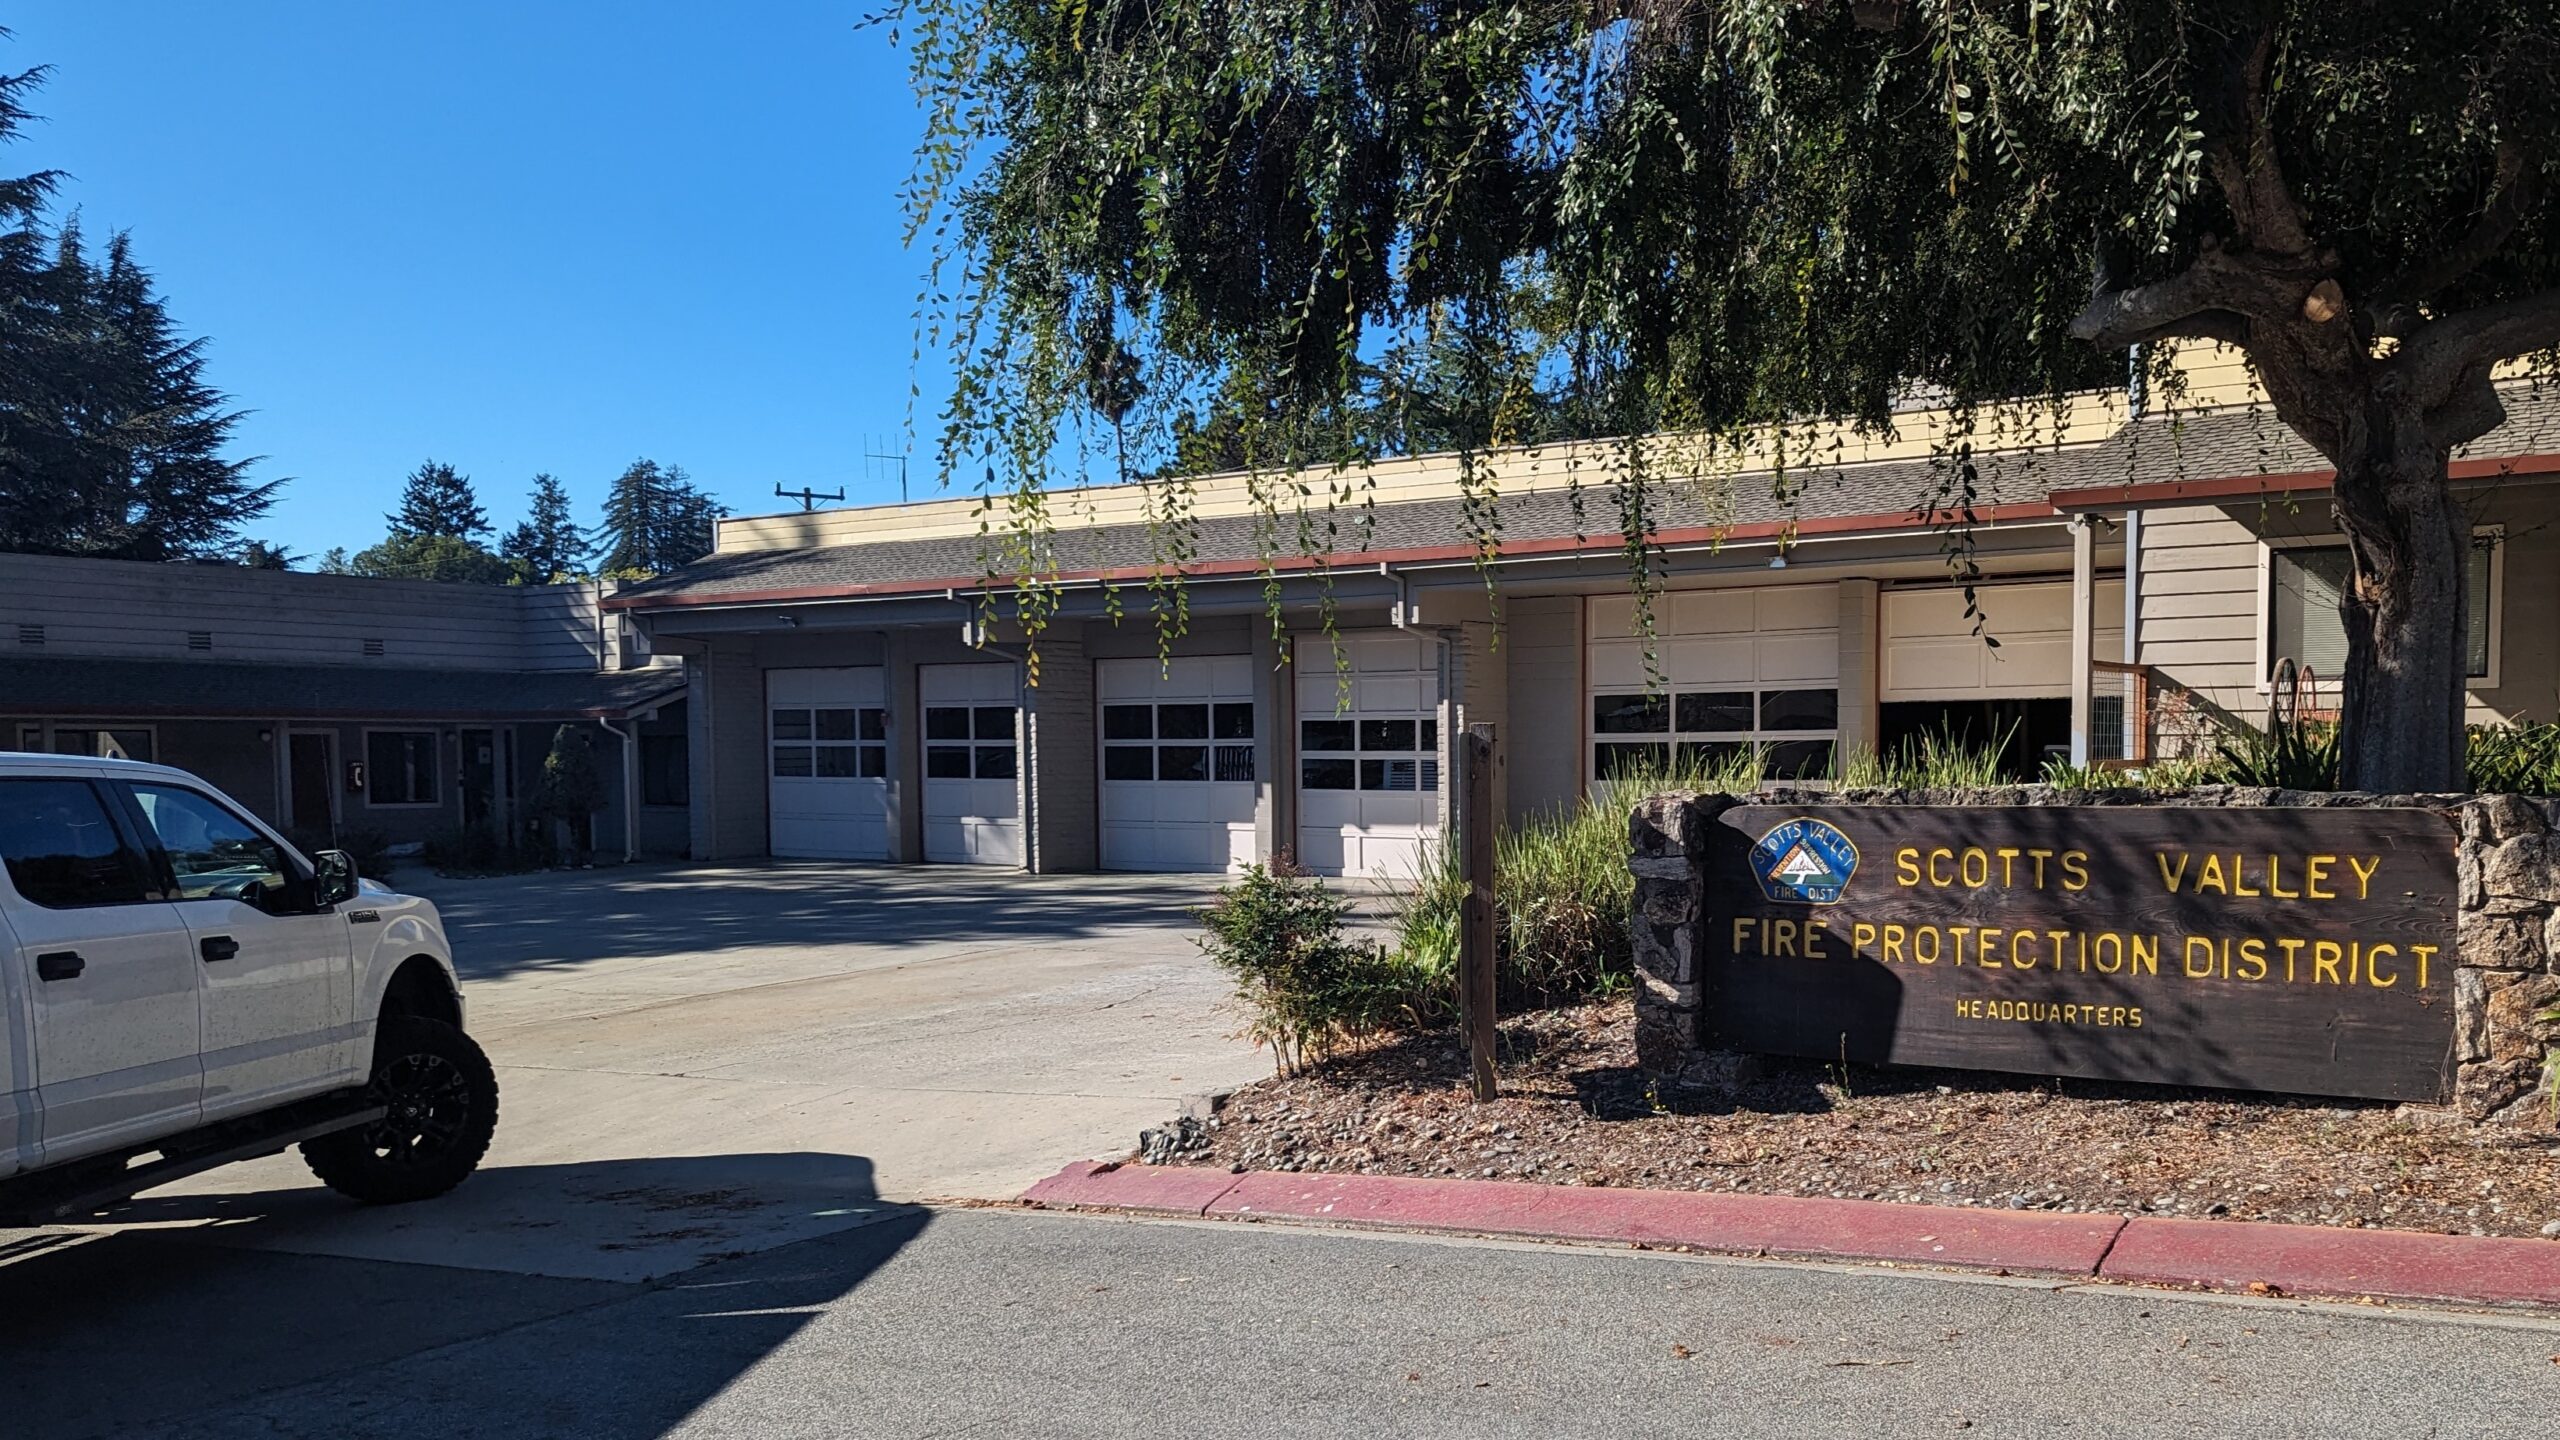 Sede del Distrito de Protección contra Incendios de Scotts Valley